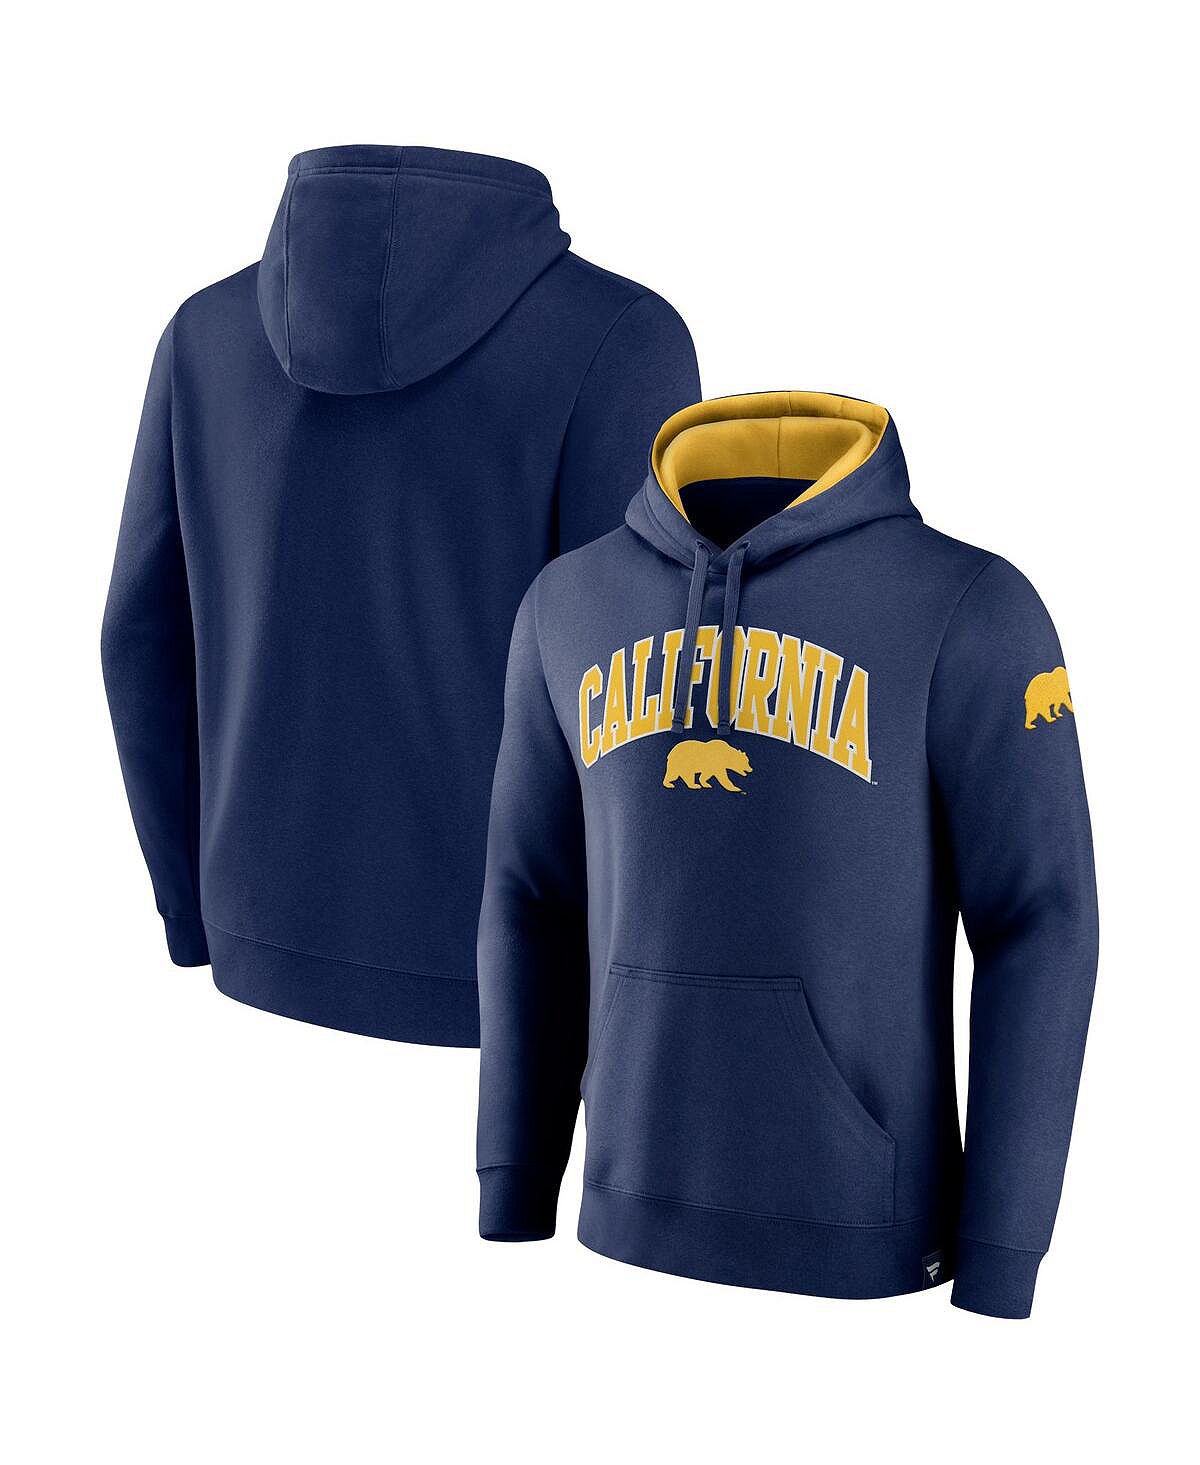 Мужской саржевый пуловер с капюшоном темно-синего цвета с логотипом Cal Bears Arch и Tackle Fanatics